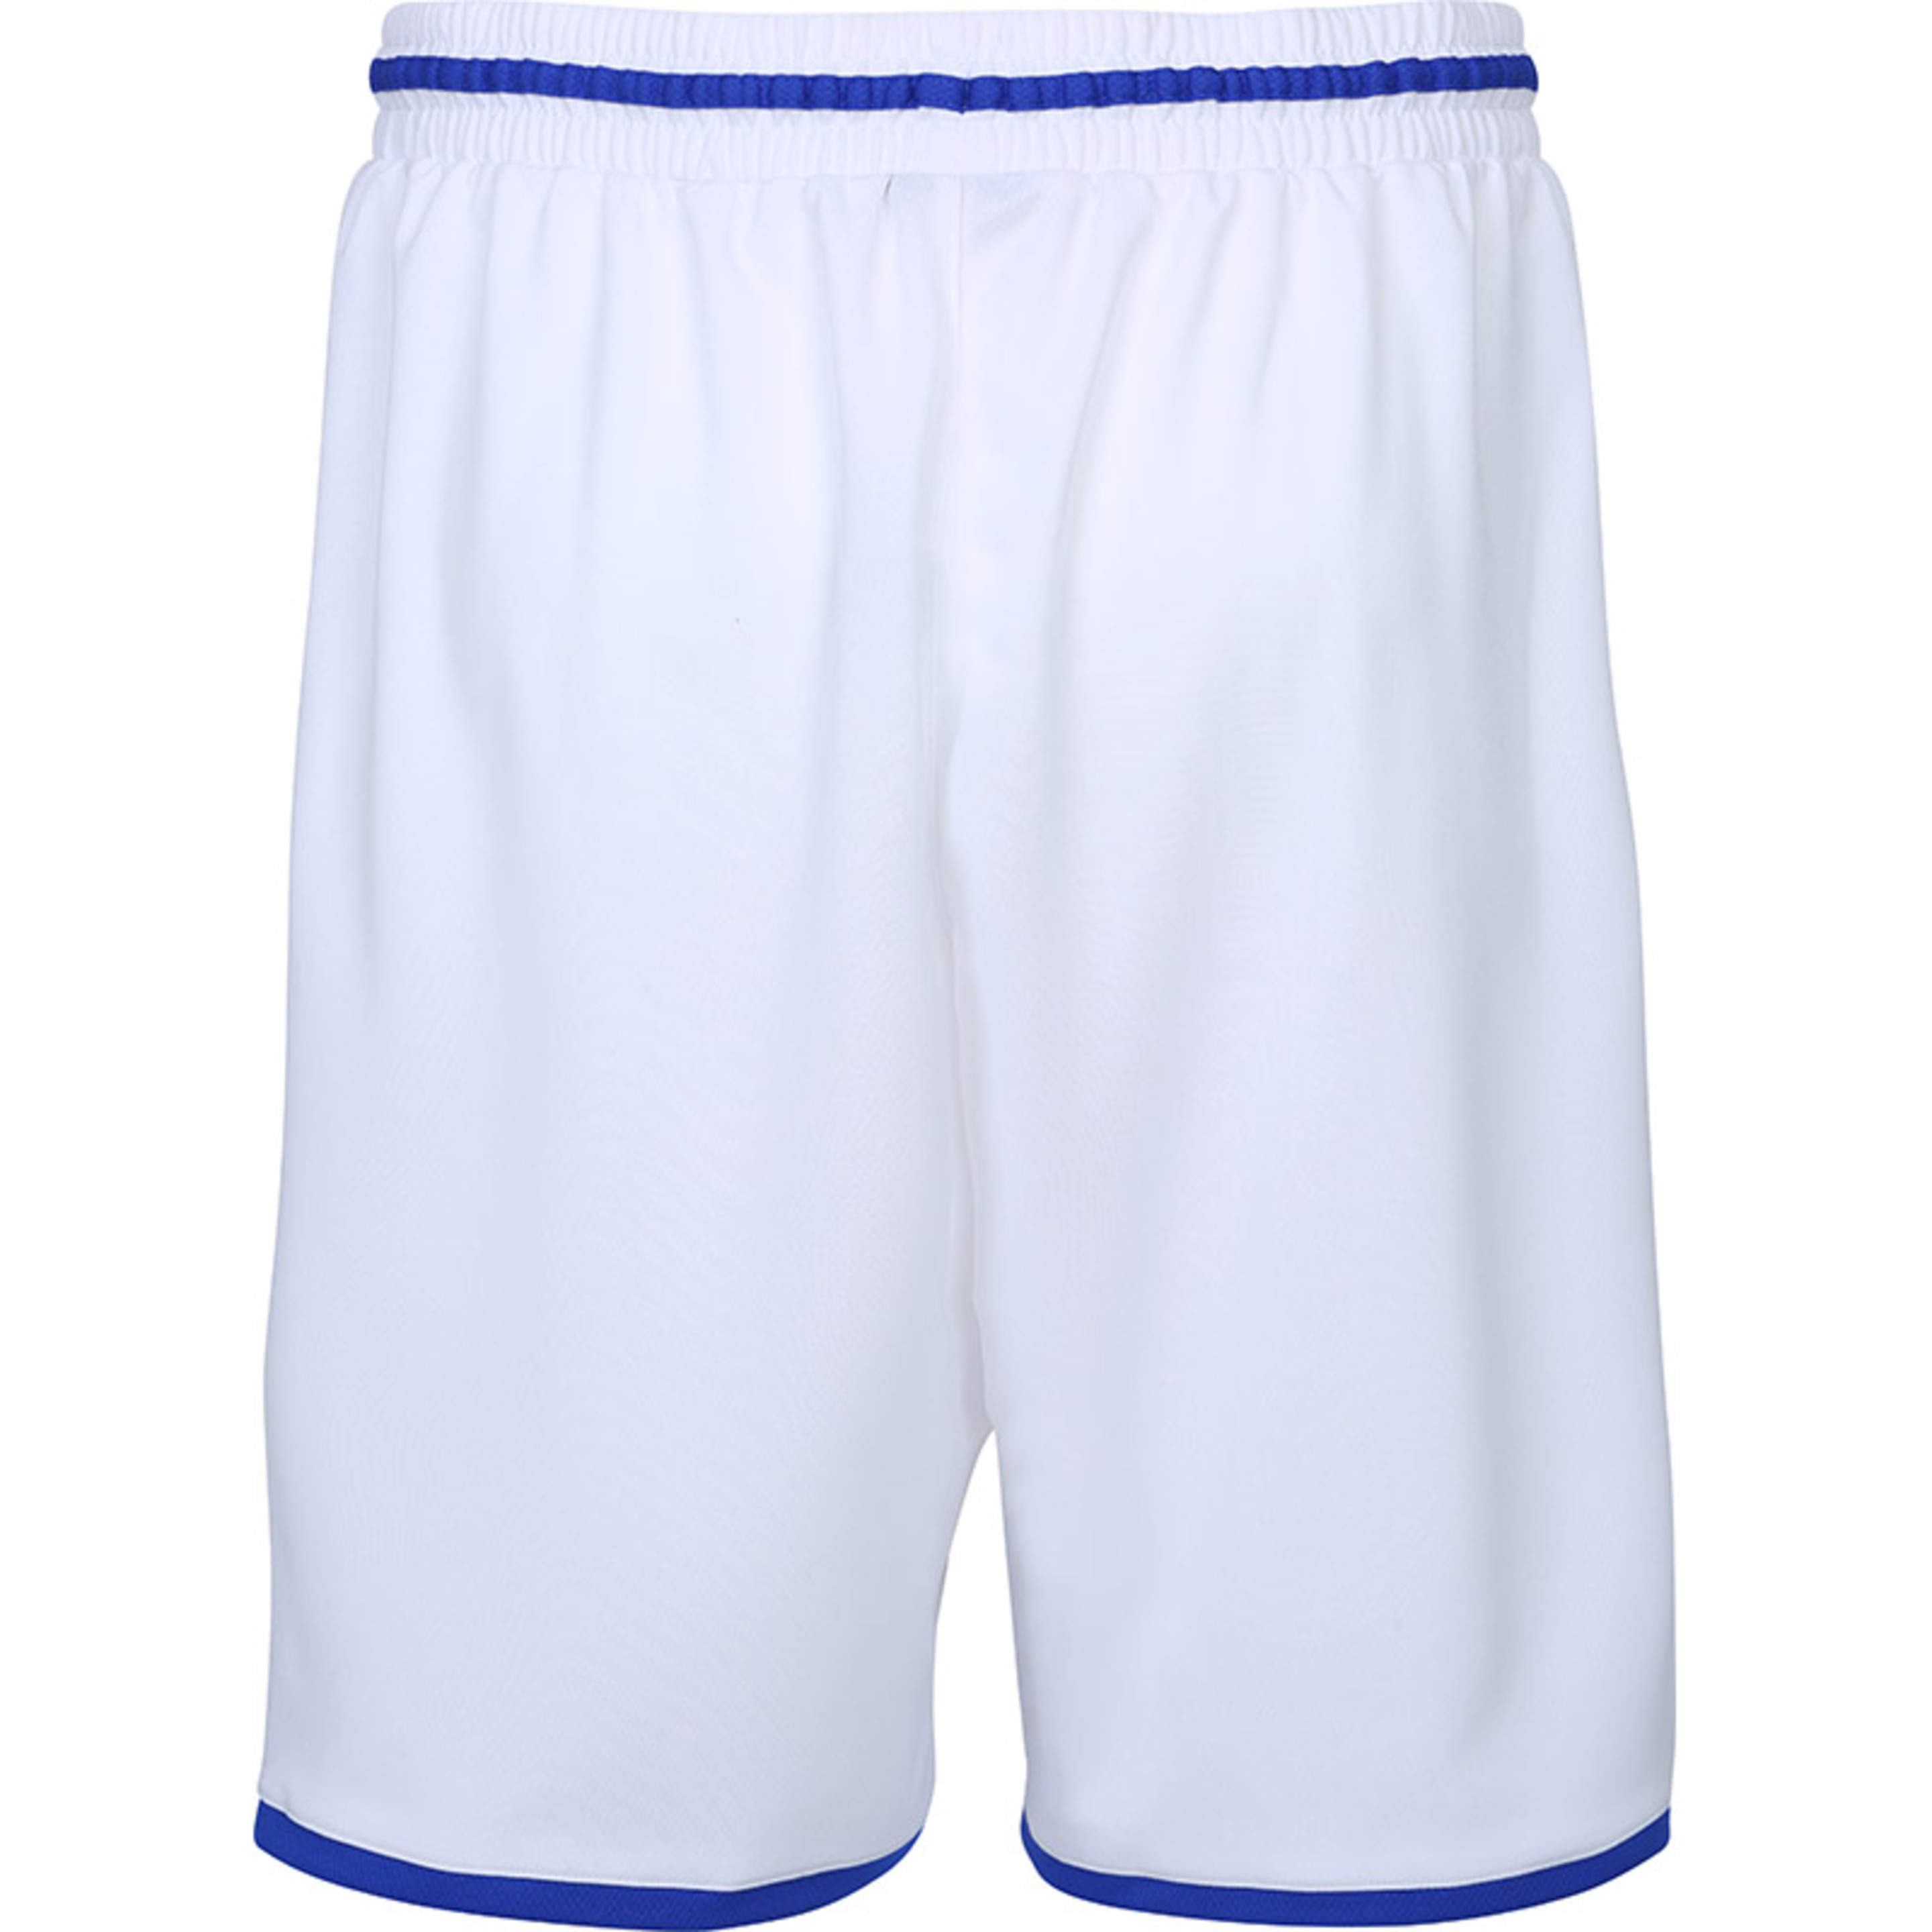 Move Shorts Blanco/azul Royal Spalding